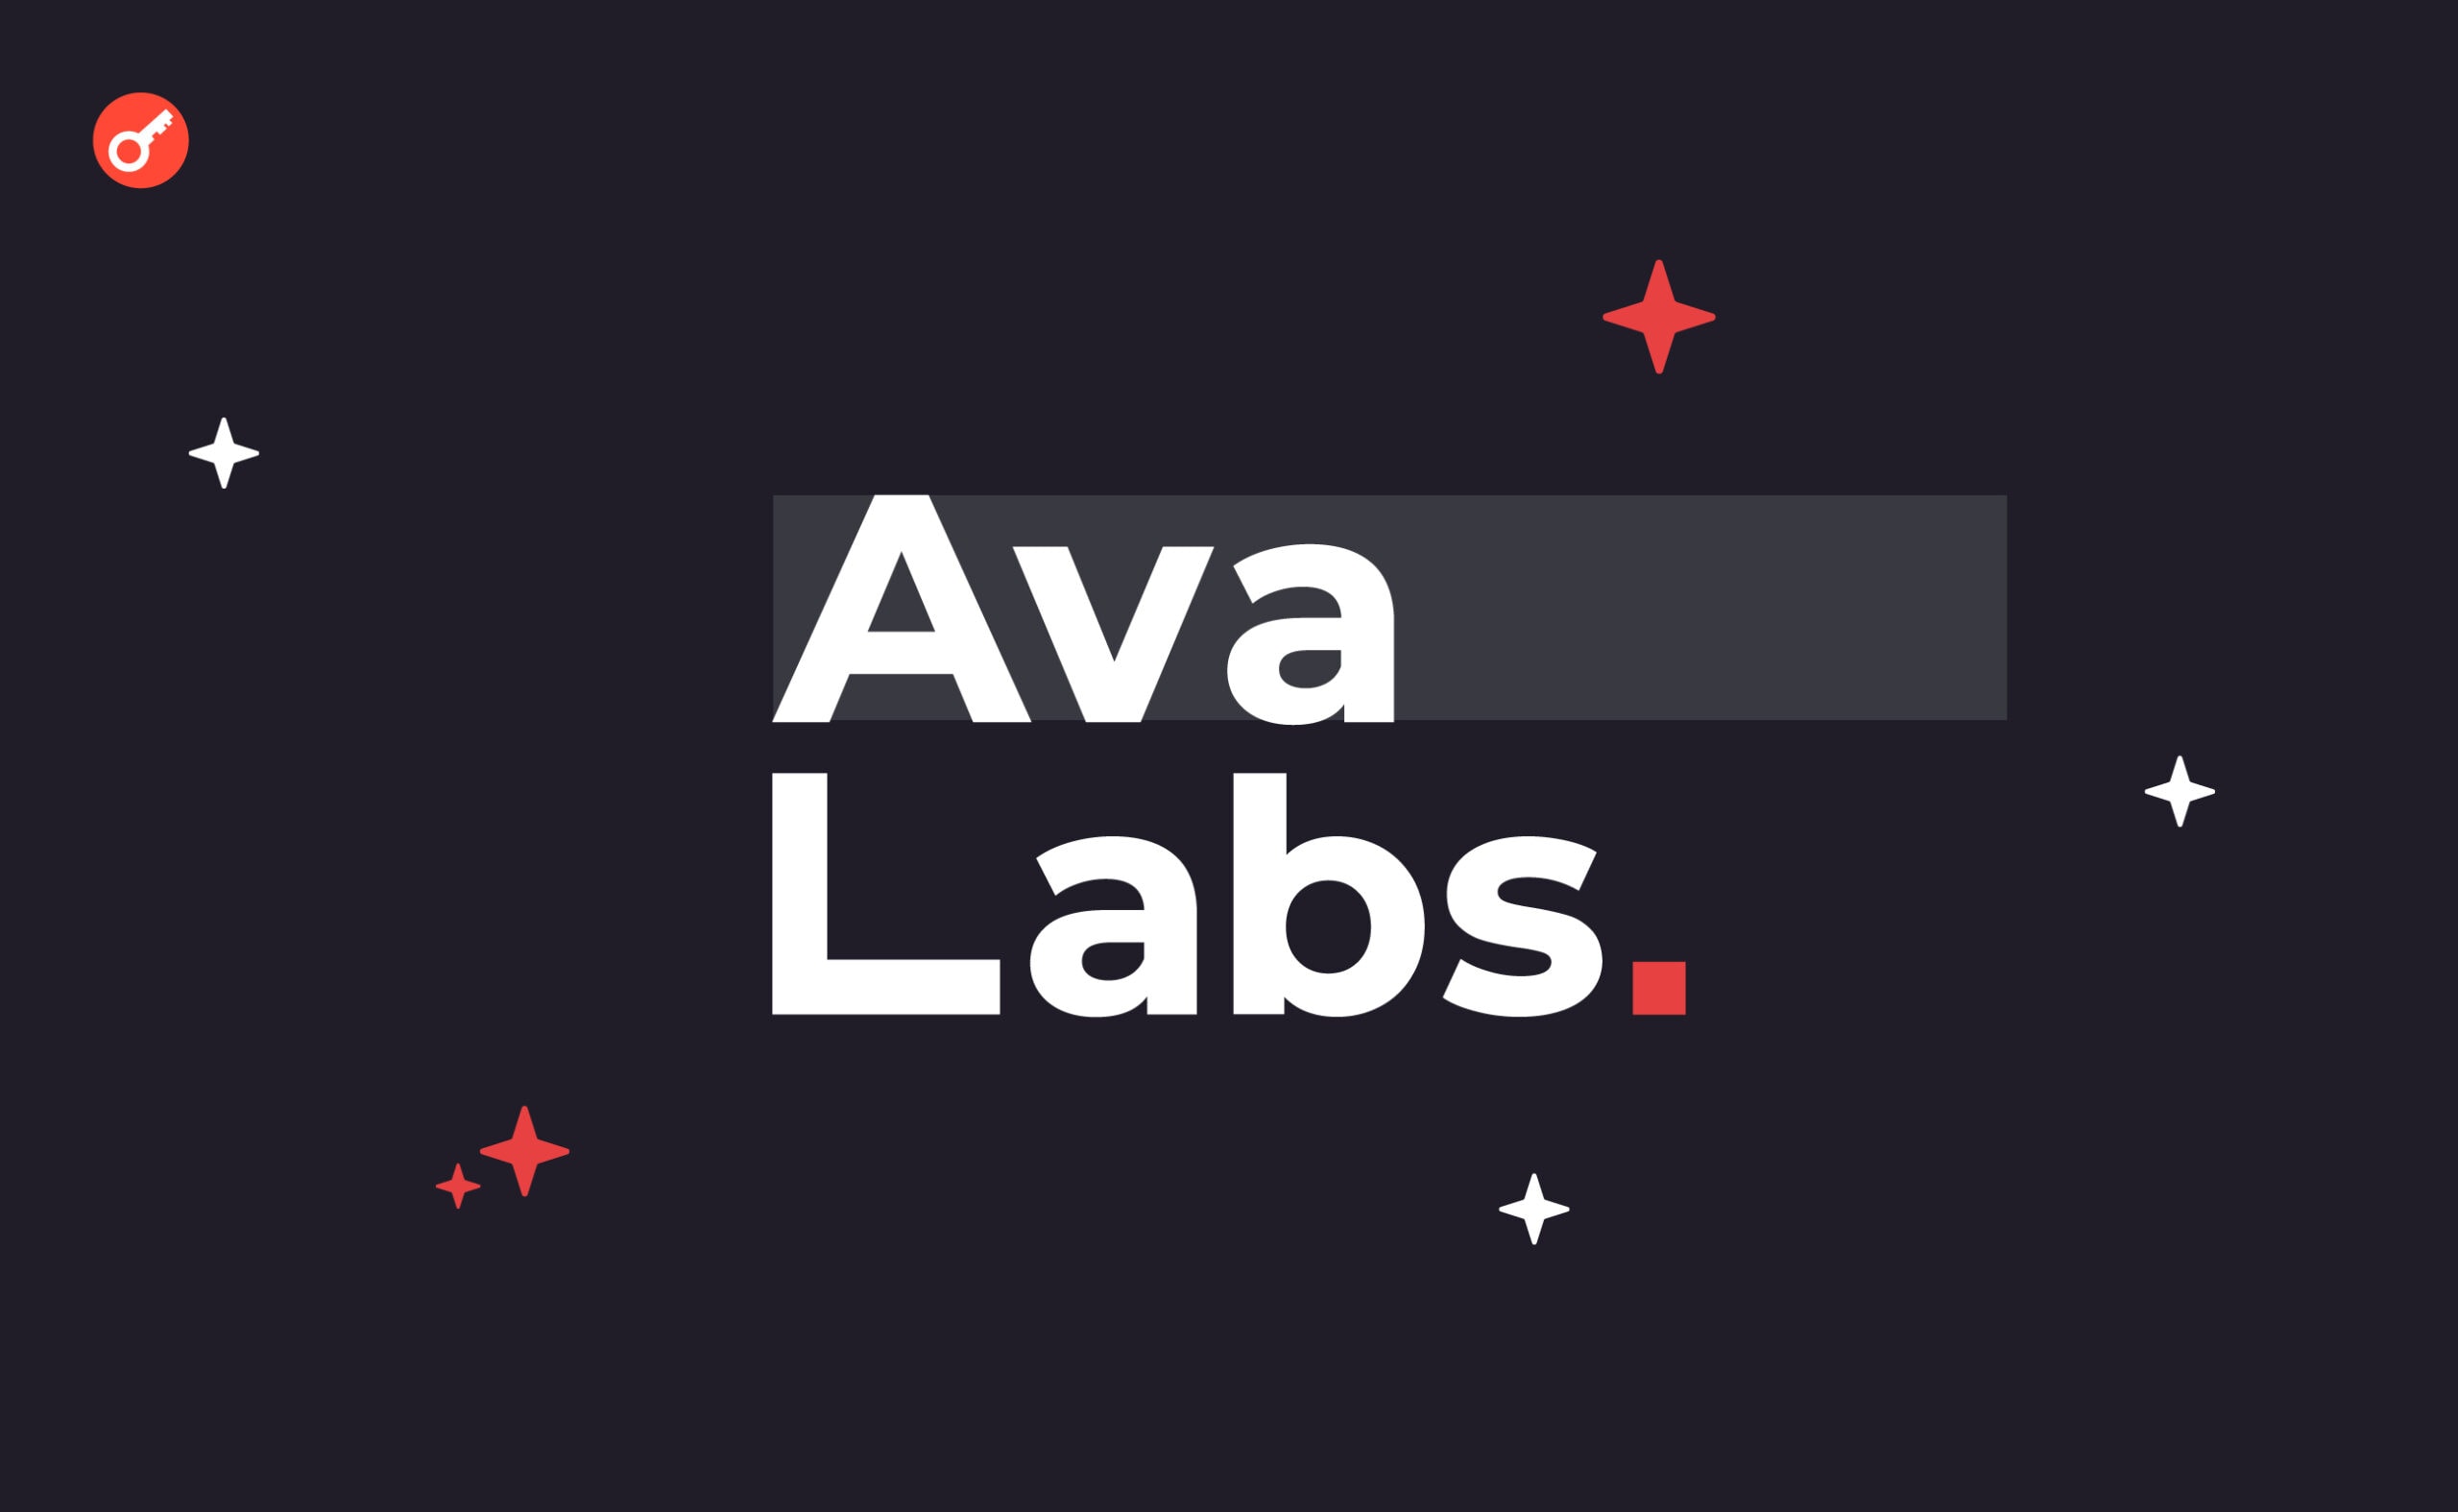 Ava Labs ogłasza uruchomienie AvaGPT, chatbota opartego na sztucznej inteligencji. Główny kolaż wiadomości.